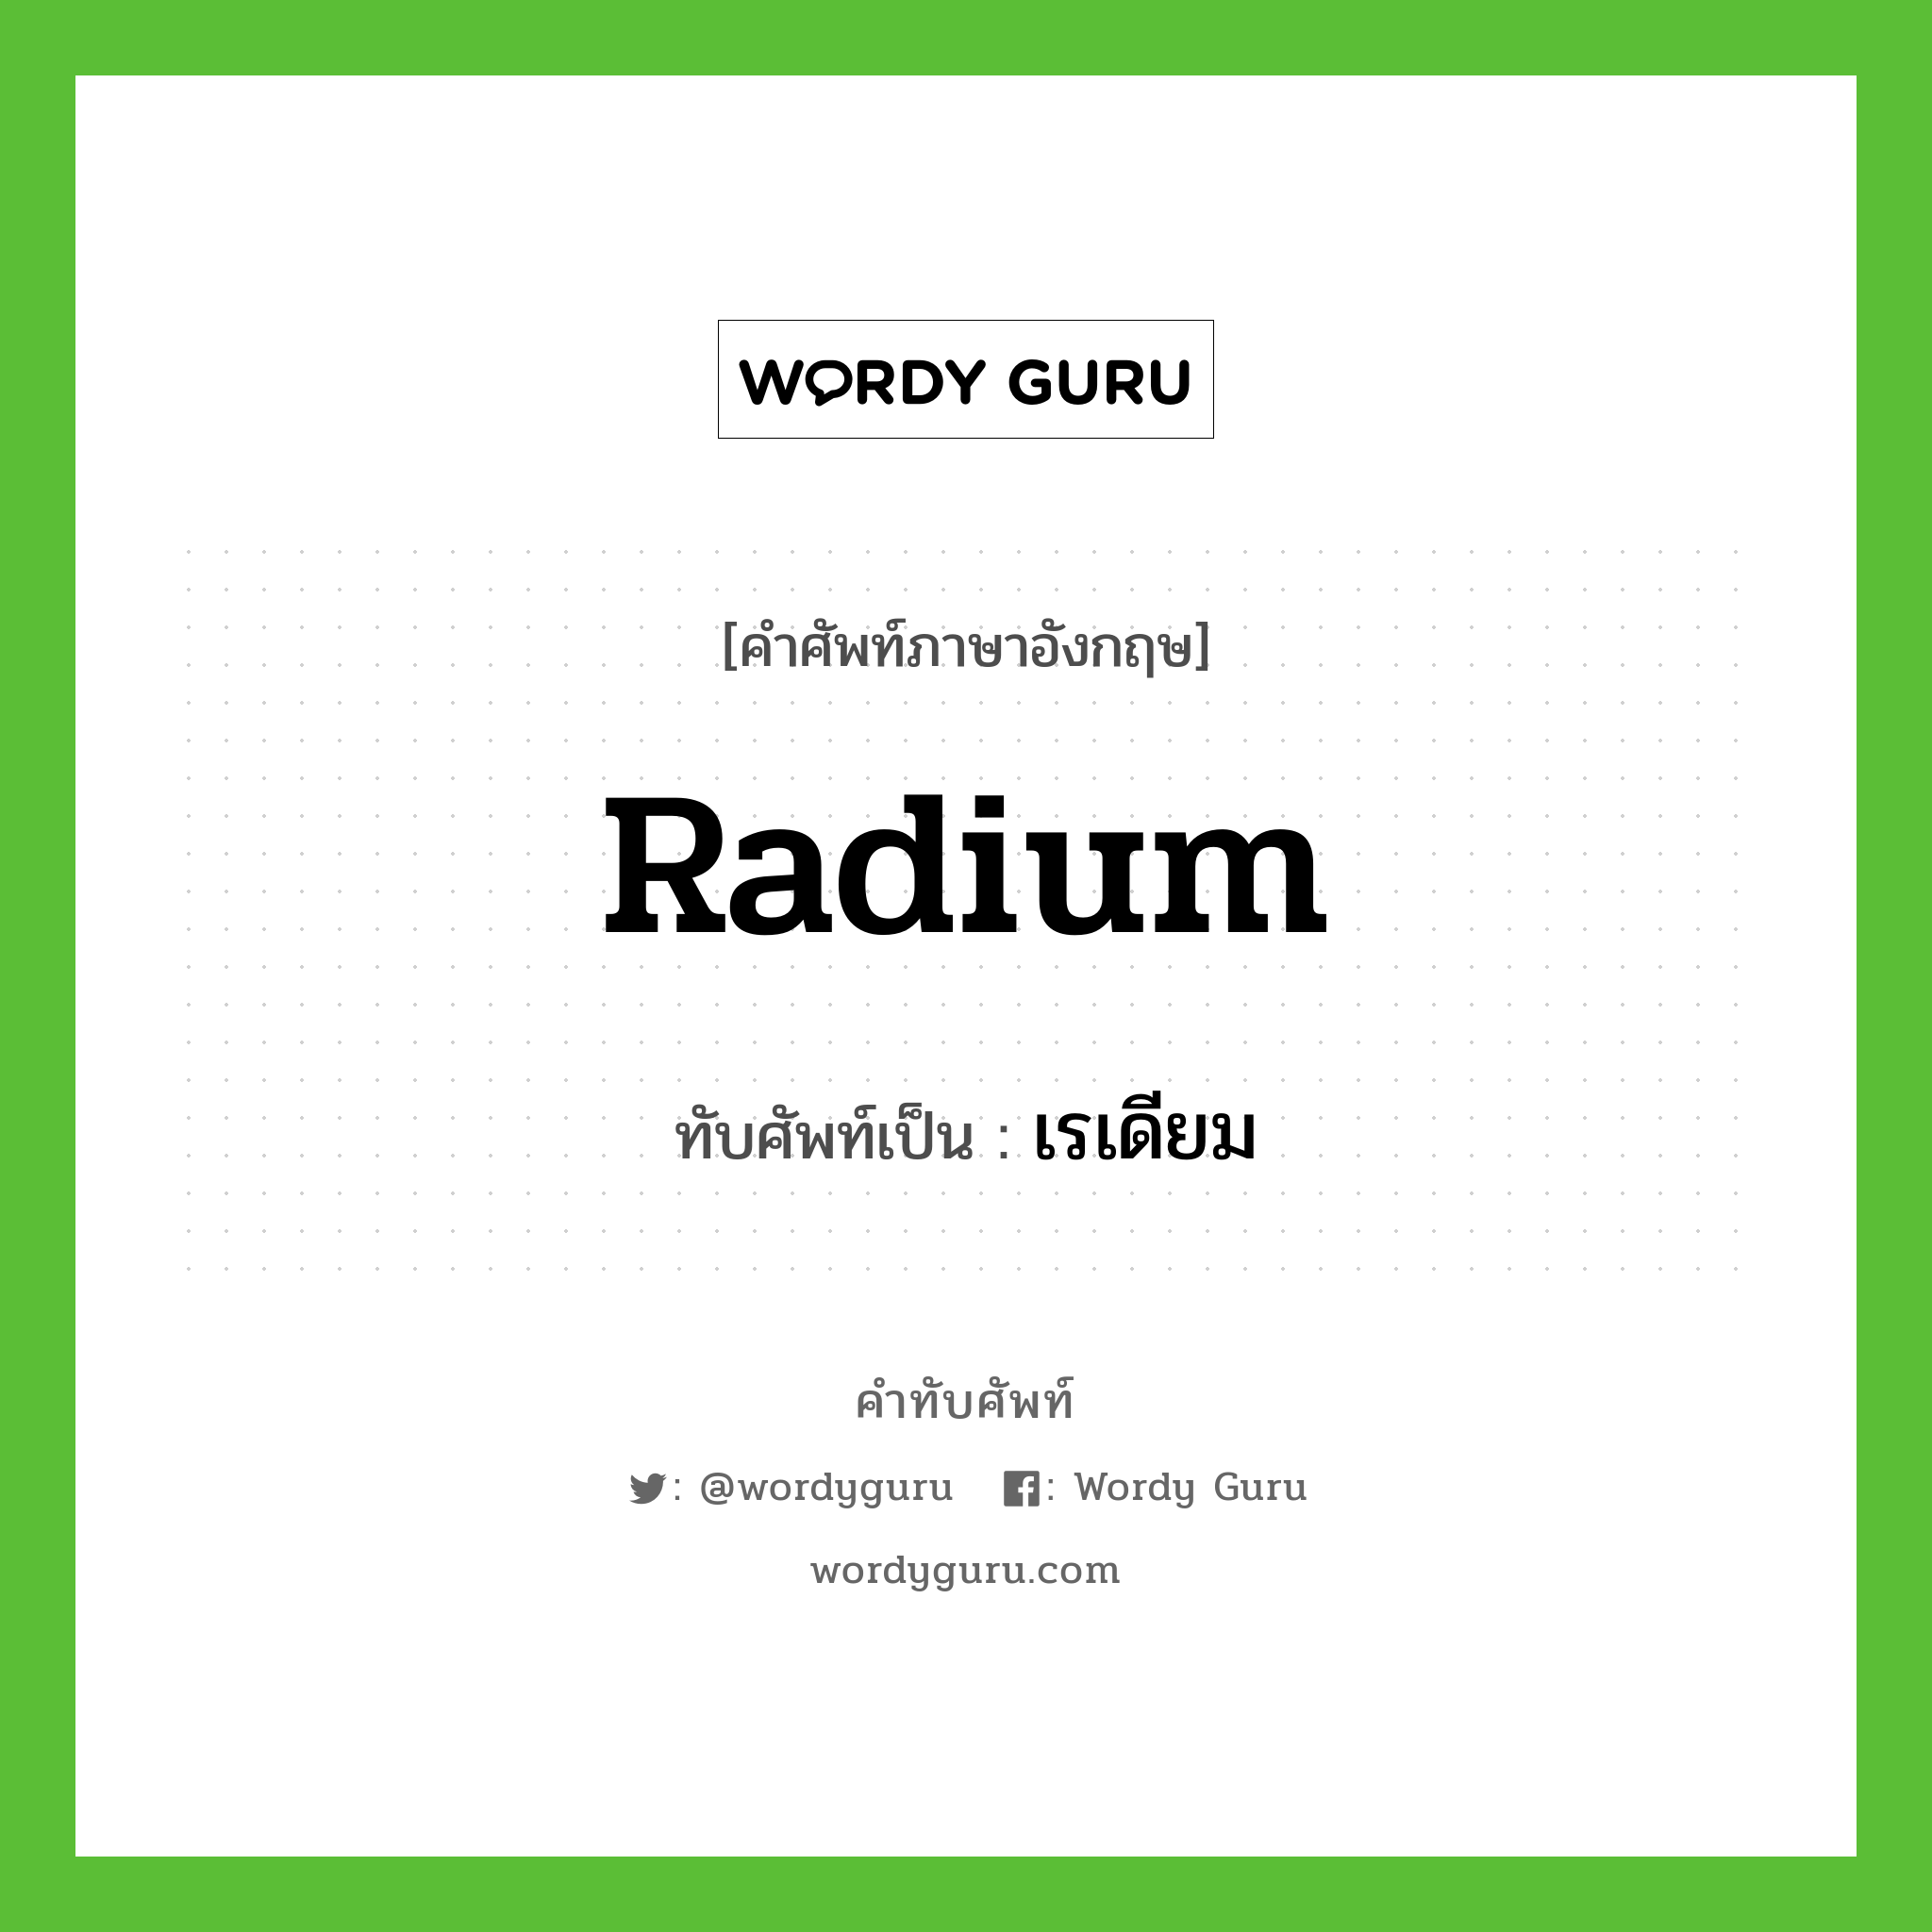 radium เขียนเป็นคำไทยว่าอะไร?, คำศัพท์ภาษาอังกฤษ radium ทับศัพท์เป็น เรเดียม